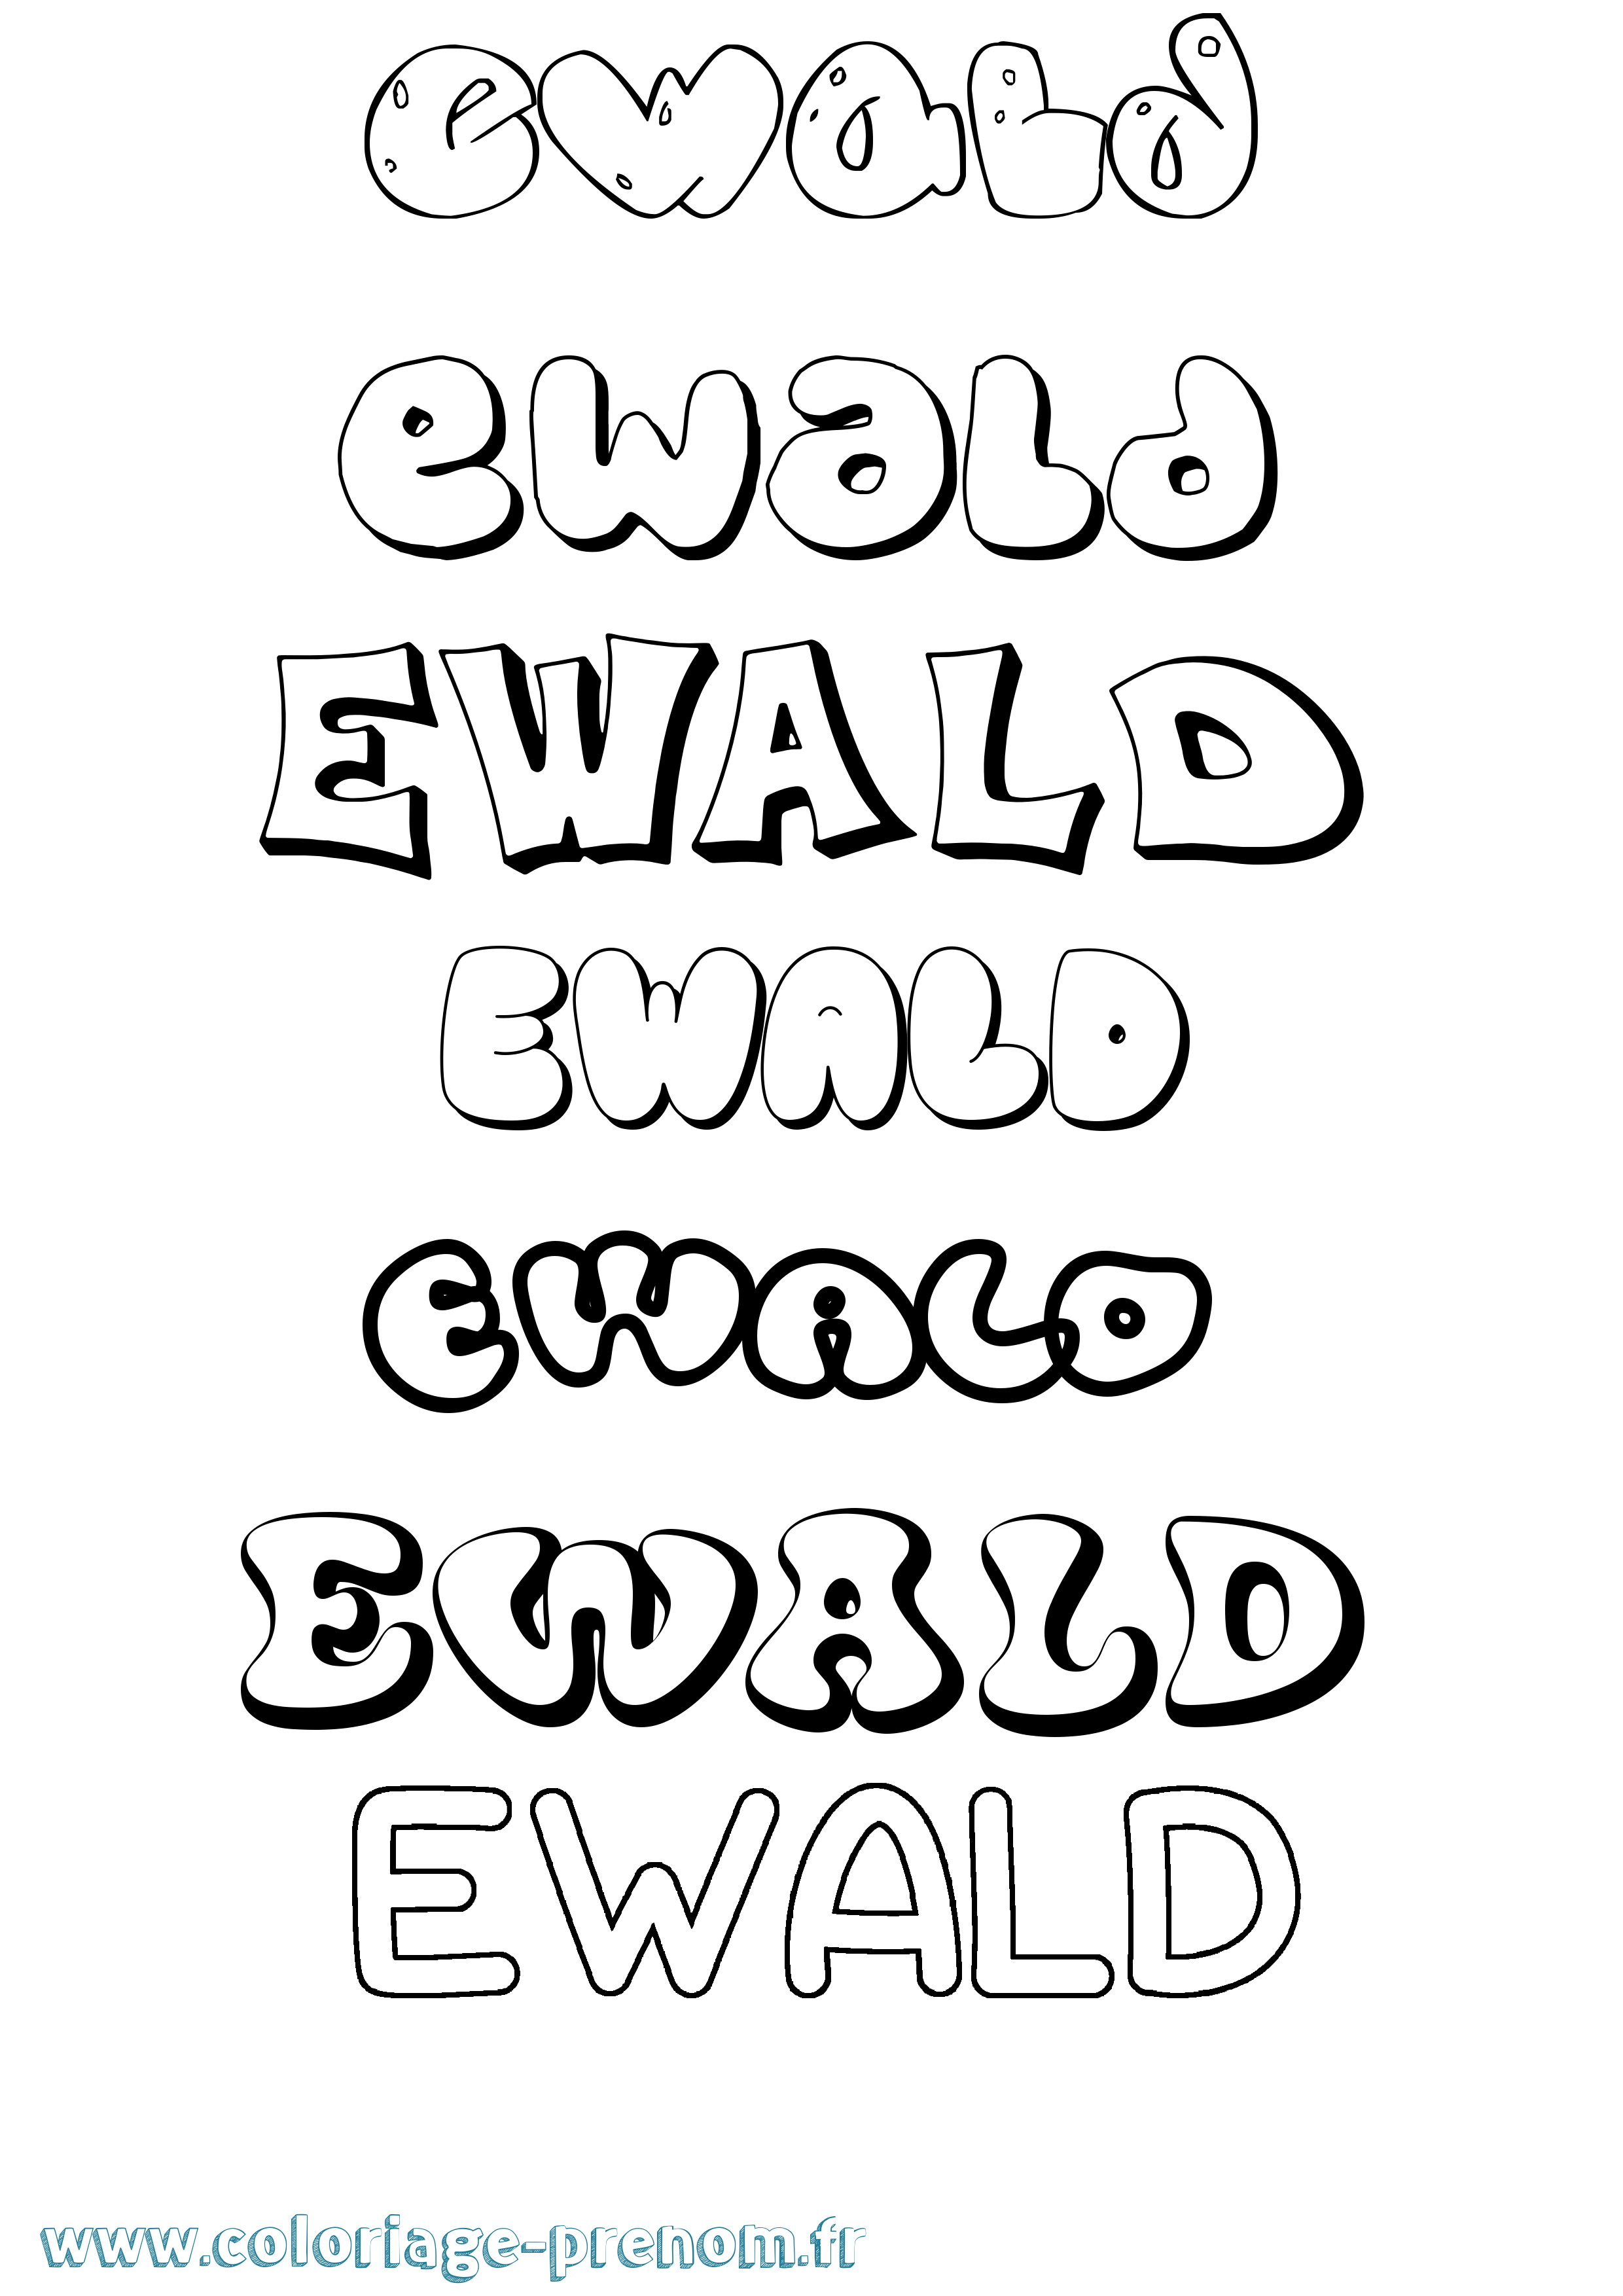 Coloriage prénom Ewald Bubble